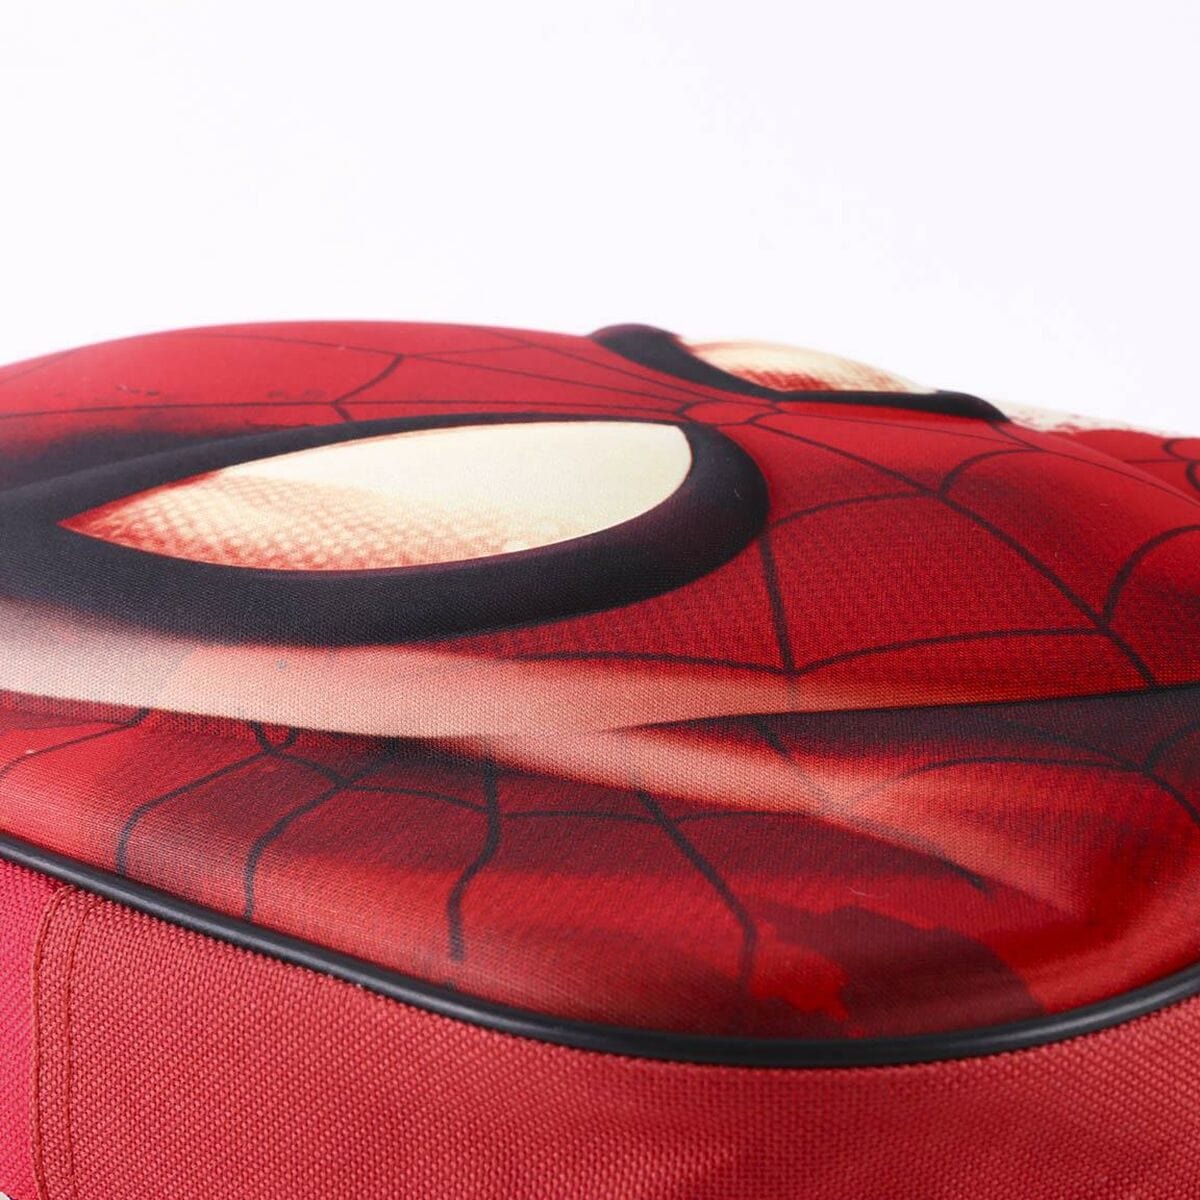 Spiderman Spielzeug | Kostüme > Schulzubehör > Schulranzen Schulrucksack Spiderman Rot (25 x 31 x 10 cm)